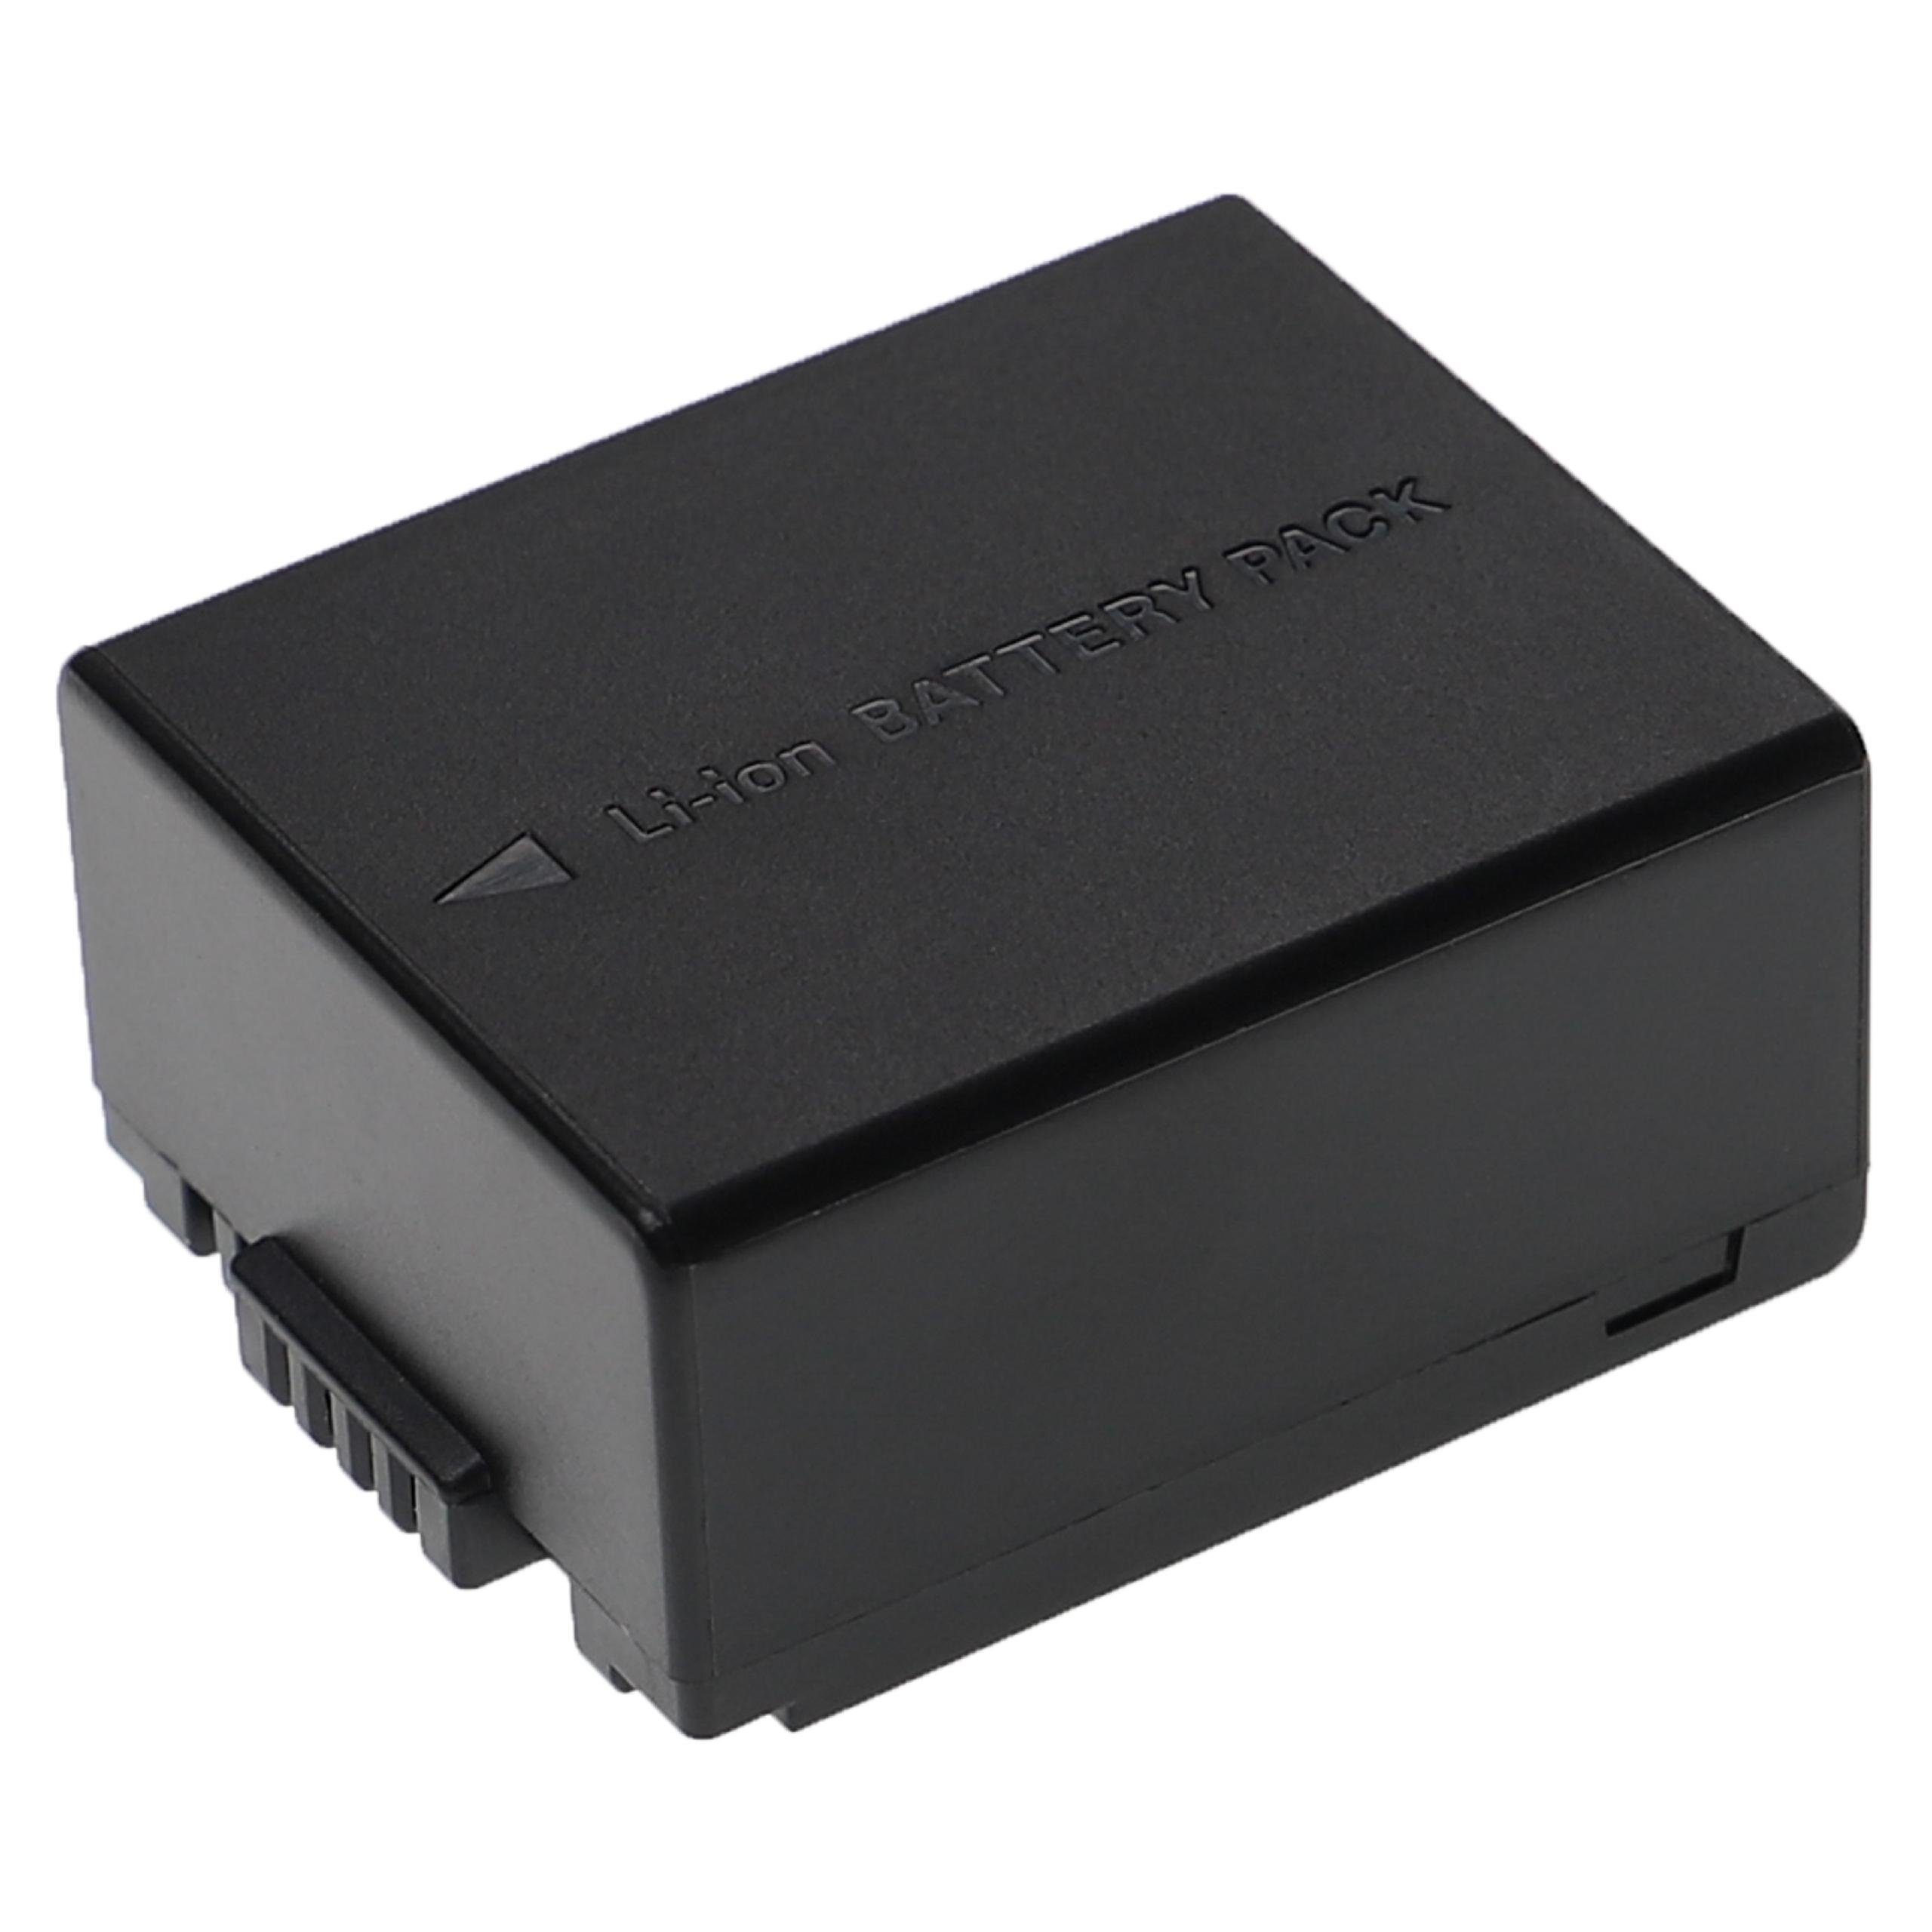 Extensilo kompatibel mit Panasonic Lumix DMC-GH1R, DMC-GH1KEB-R DMC-GH1N, mAh 1250 Li-Ion V) (7,4 Kamera-Akku